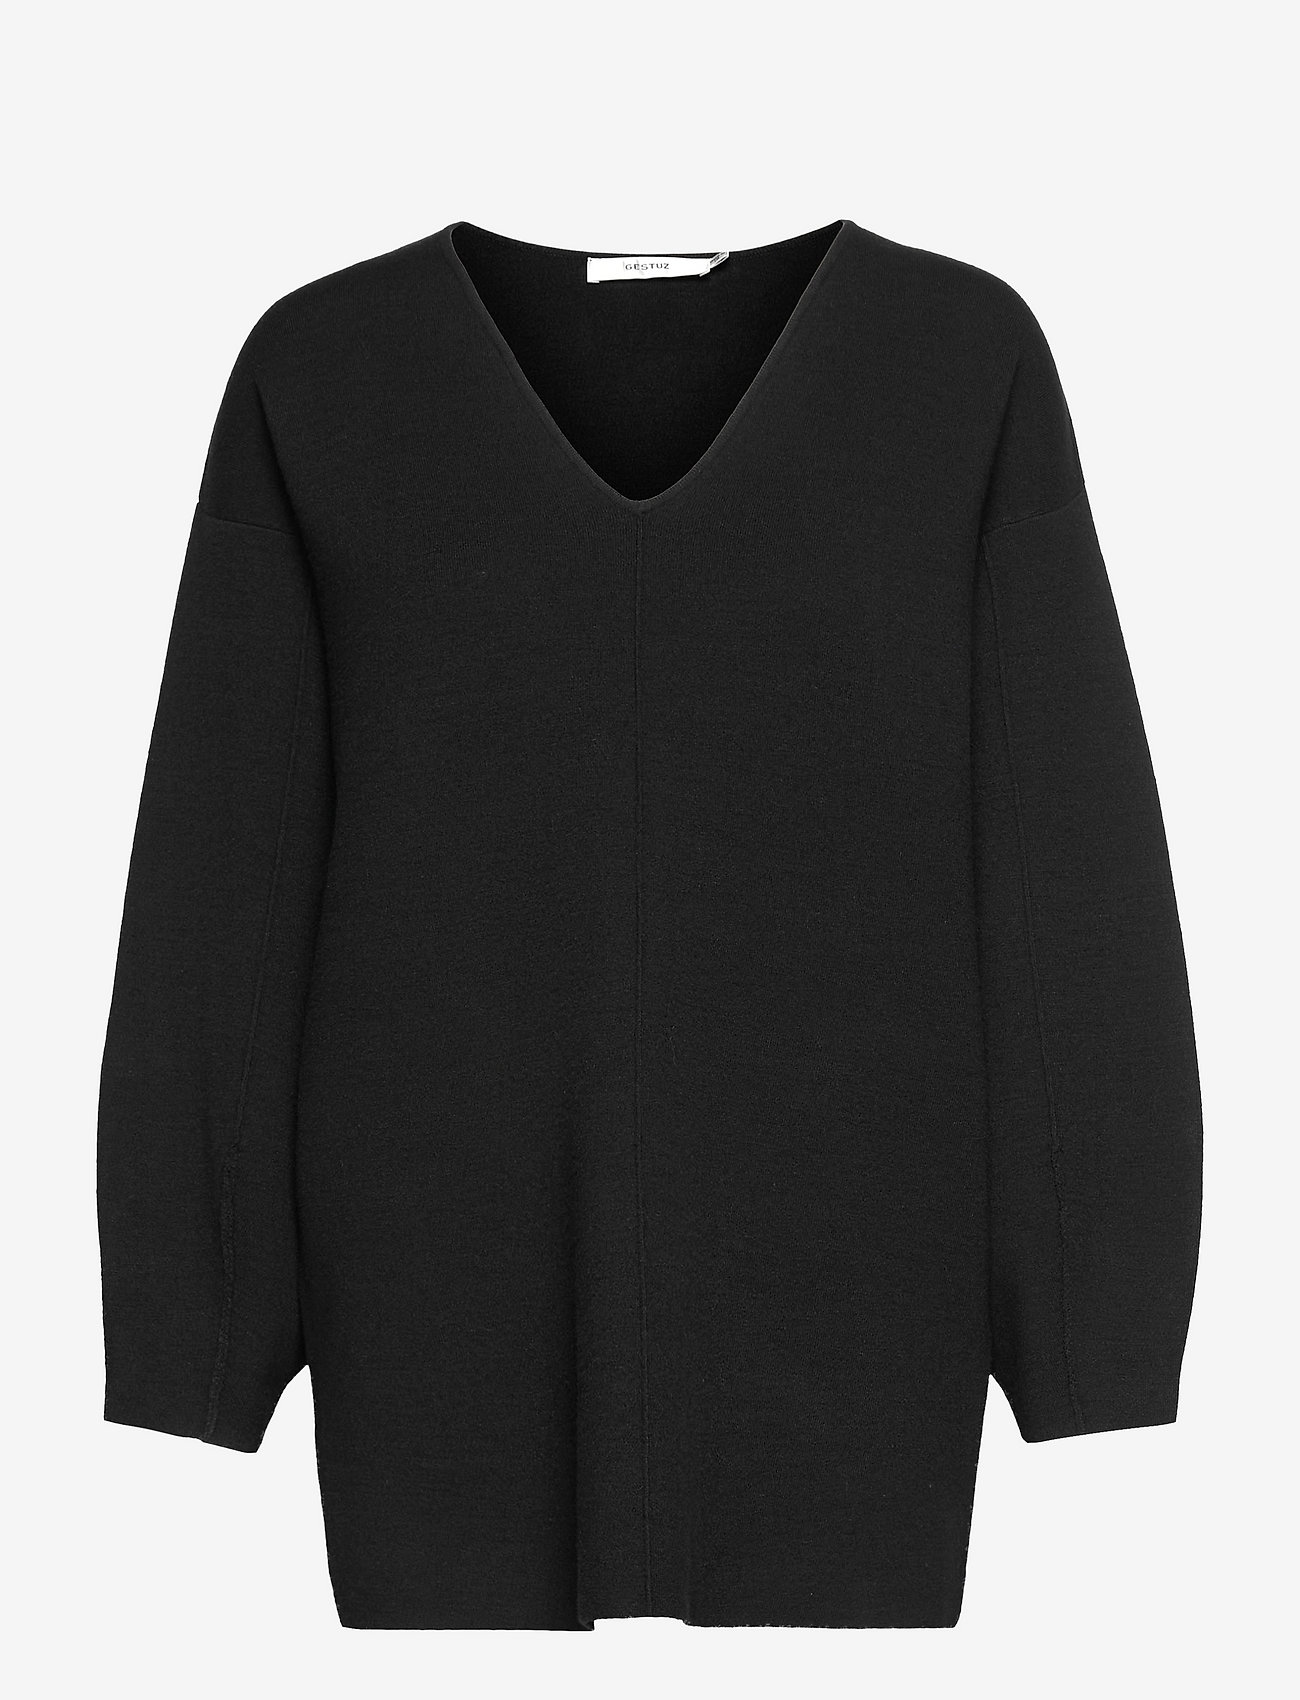 Gestuz - TalliGZ V-pullover - jumpers - black - 0